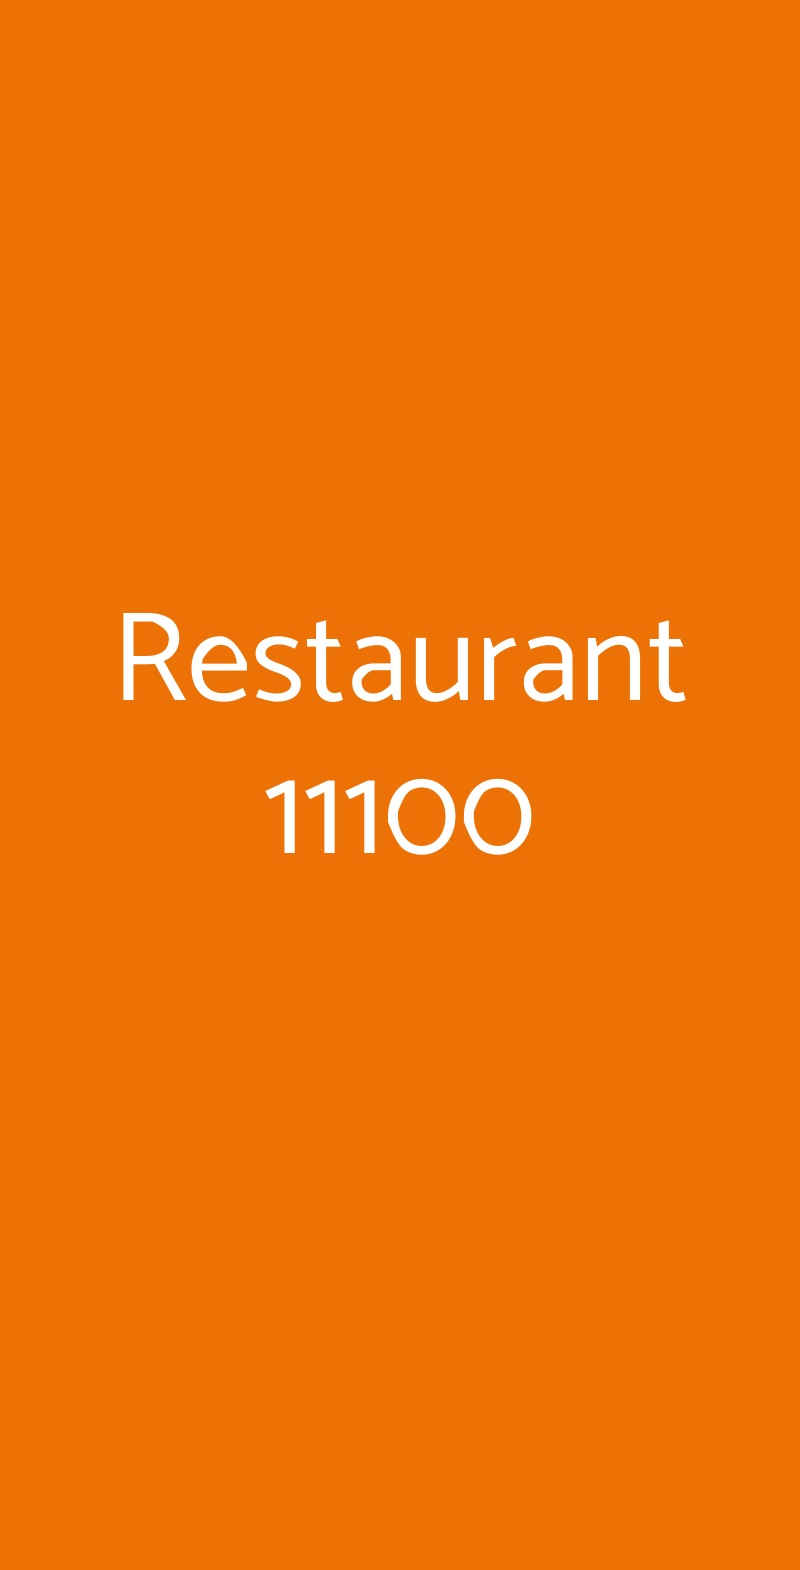 Restaurant 11100 Aosta menù 1 pagina